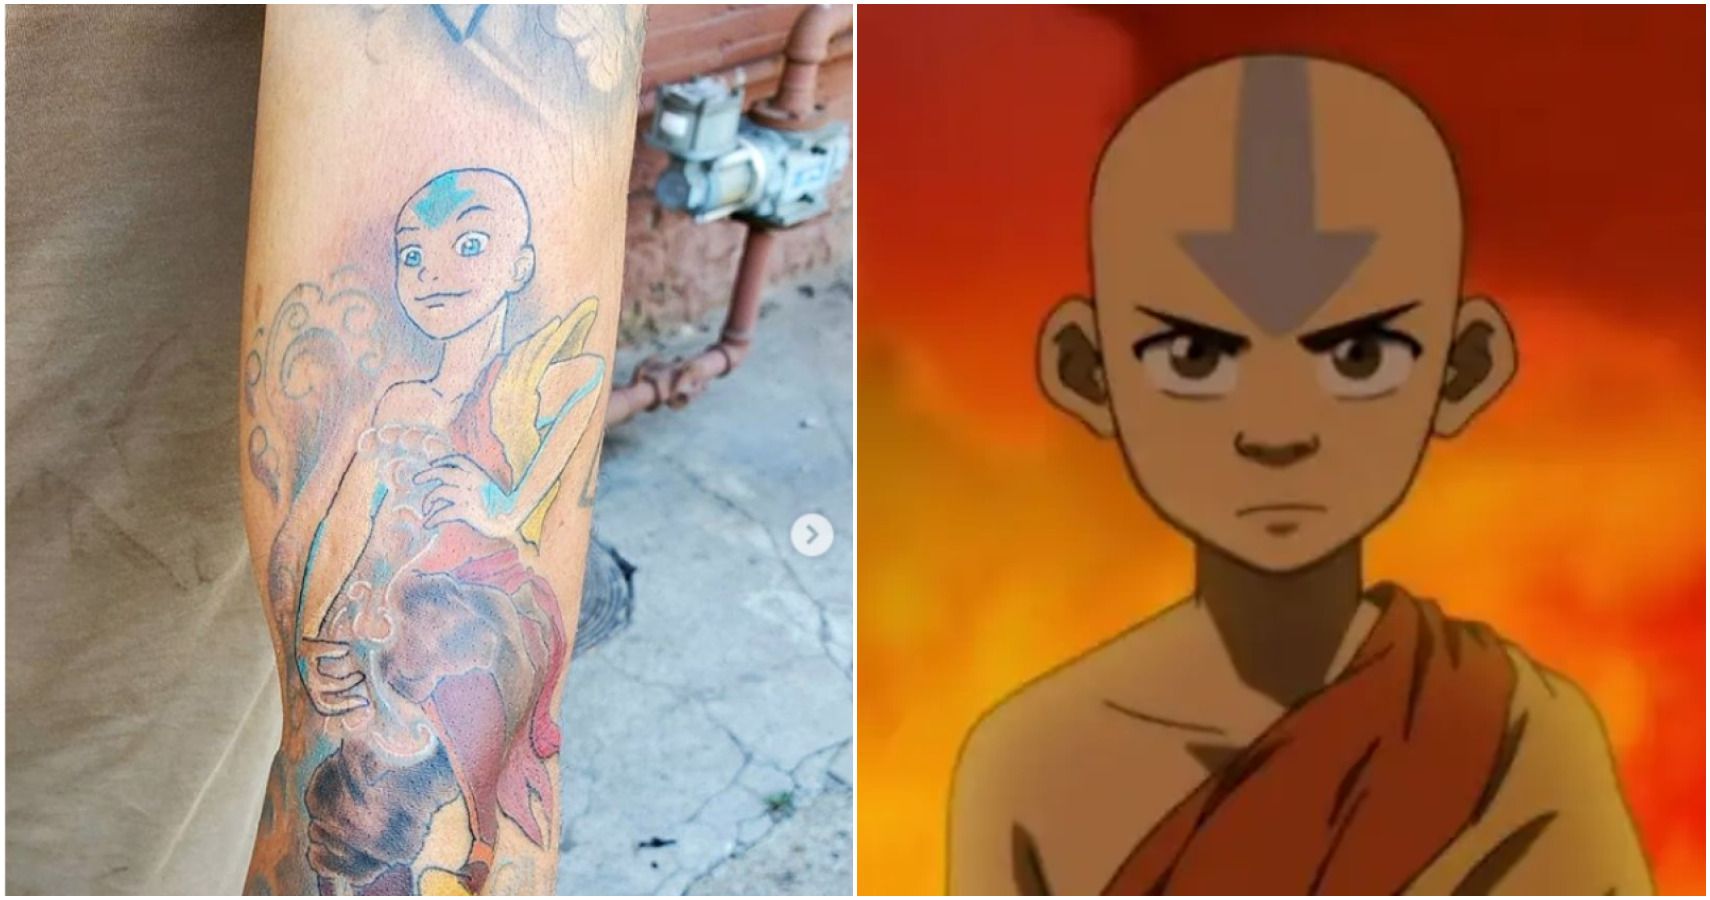 Avatar The Last Airbender Tattoo Ideas  Cool Tattoos Inspired by Avatar  The Last Airbender